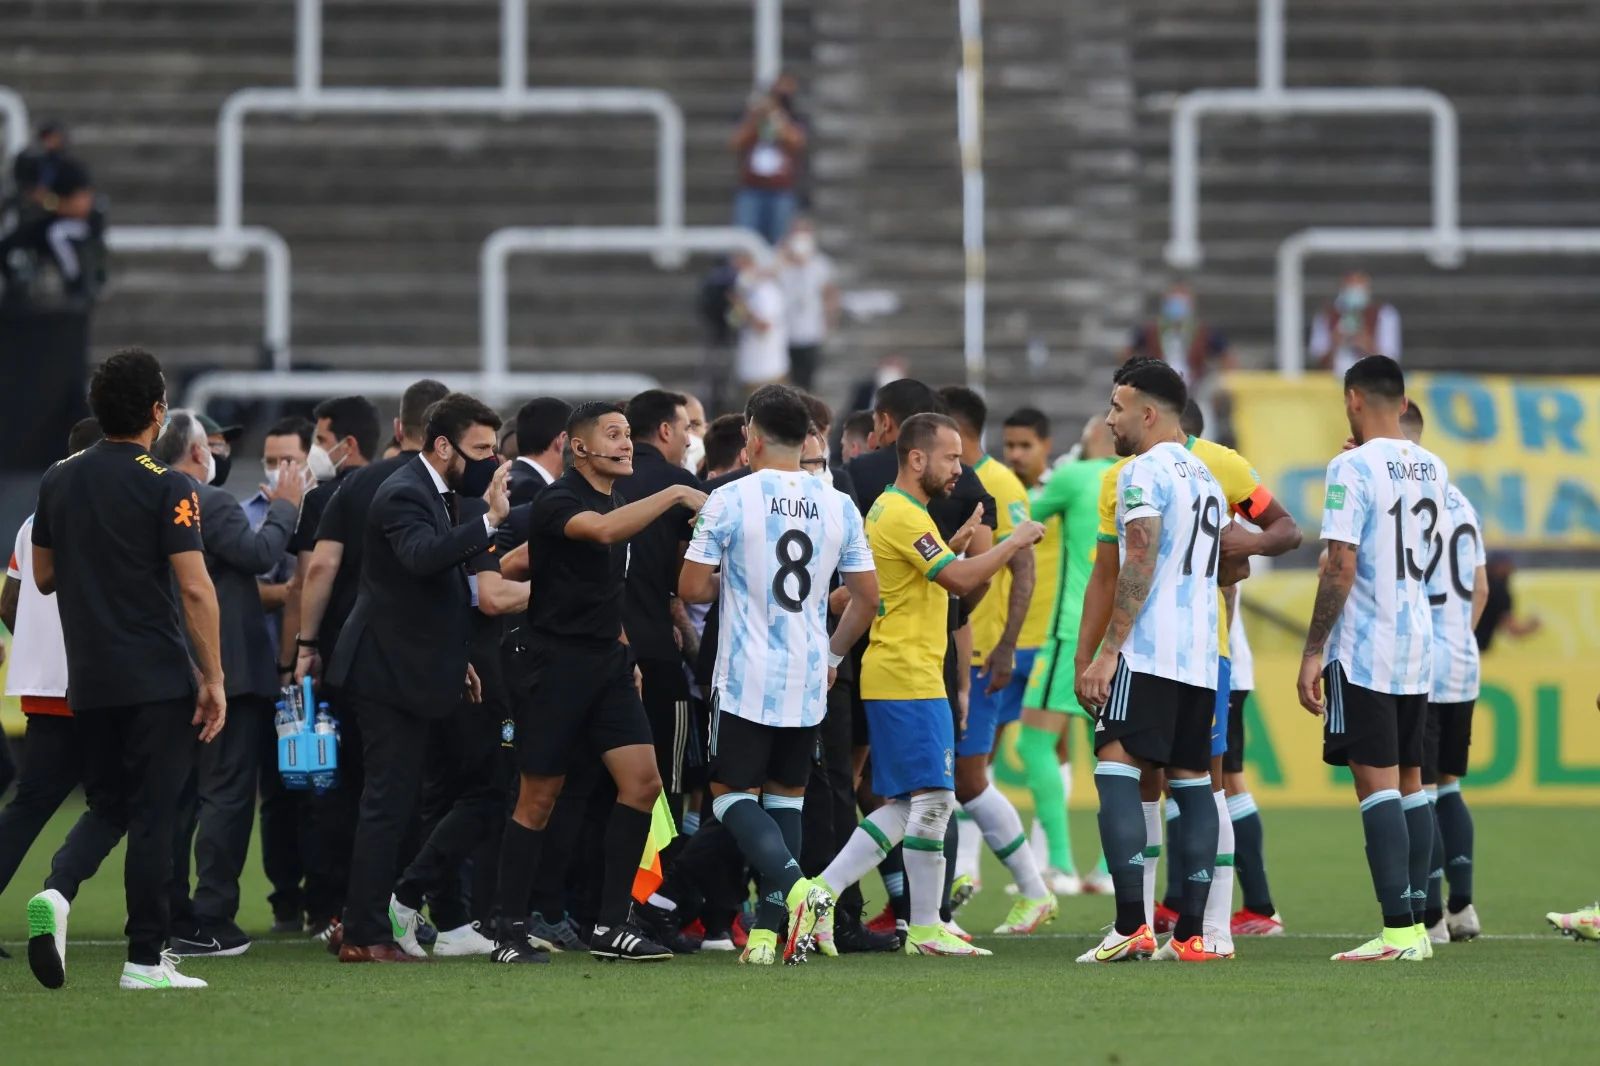 המשחק שפוצץ בין הנבחרות ארגנטינה וברזיל